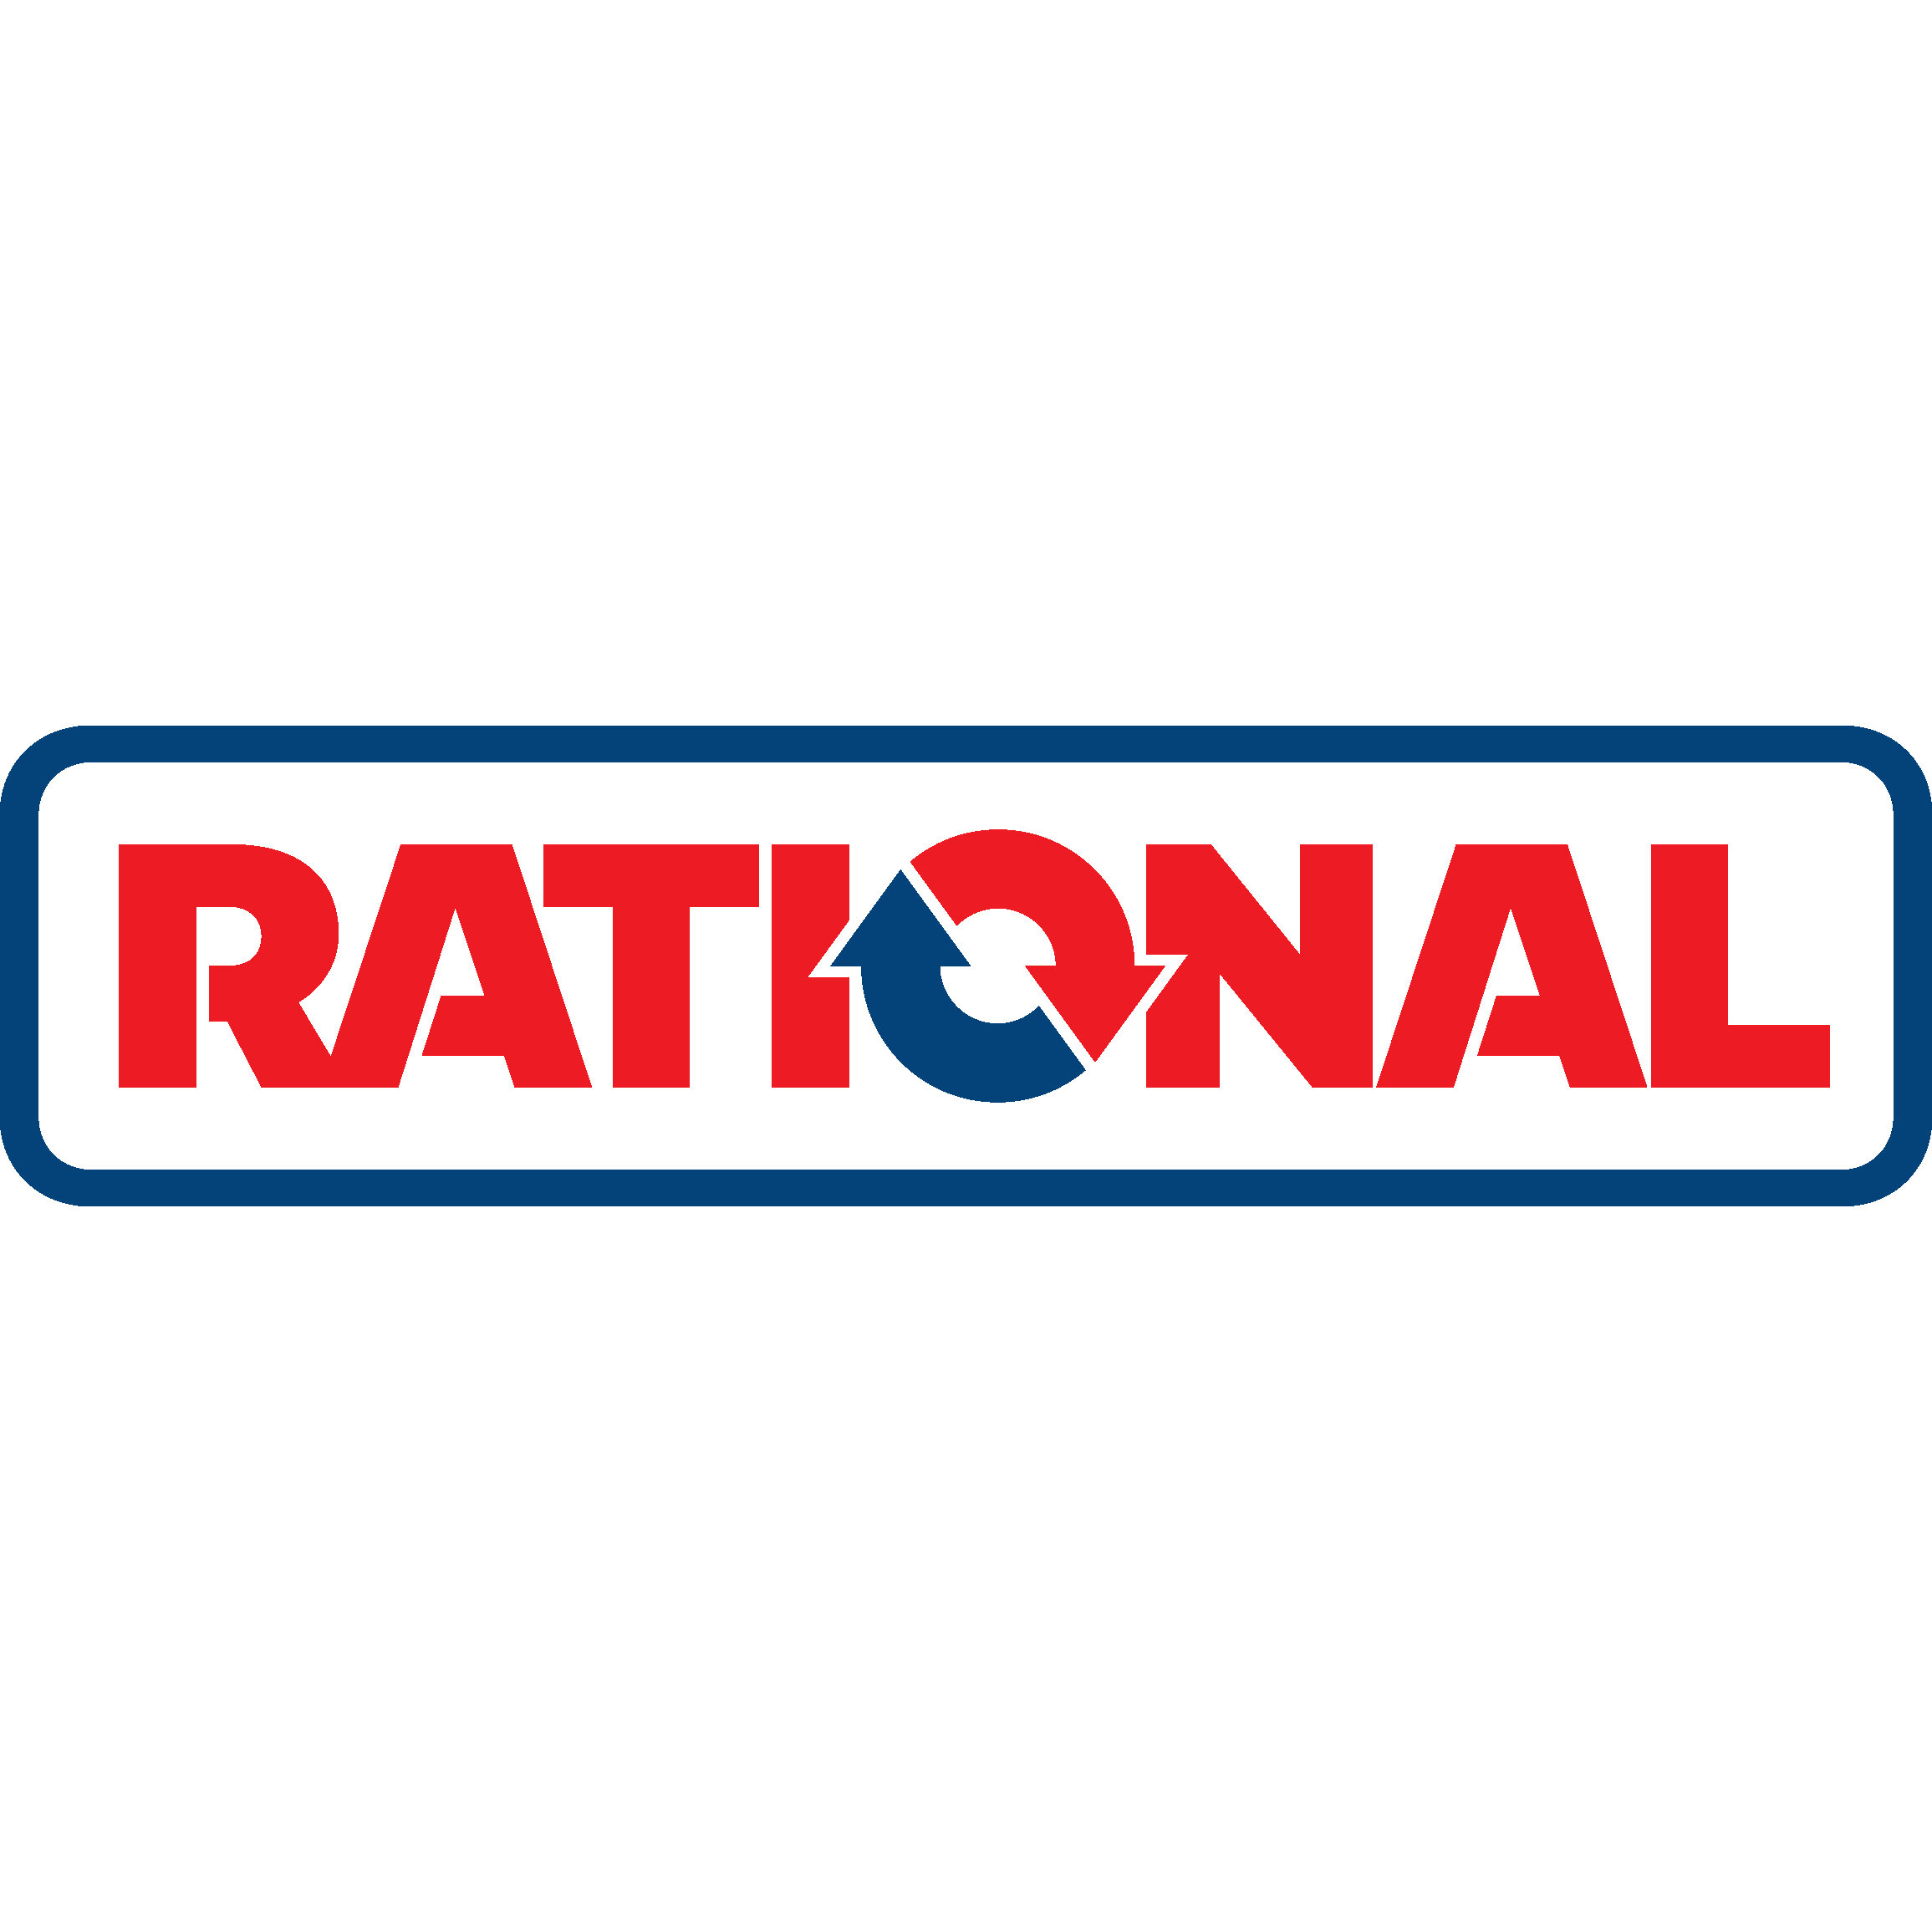 RATIONAL-logo-NEW-3.jpg